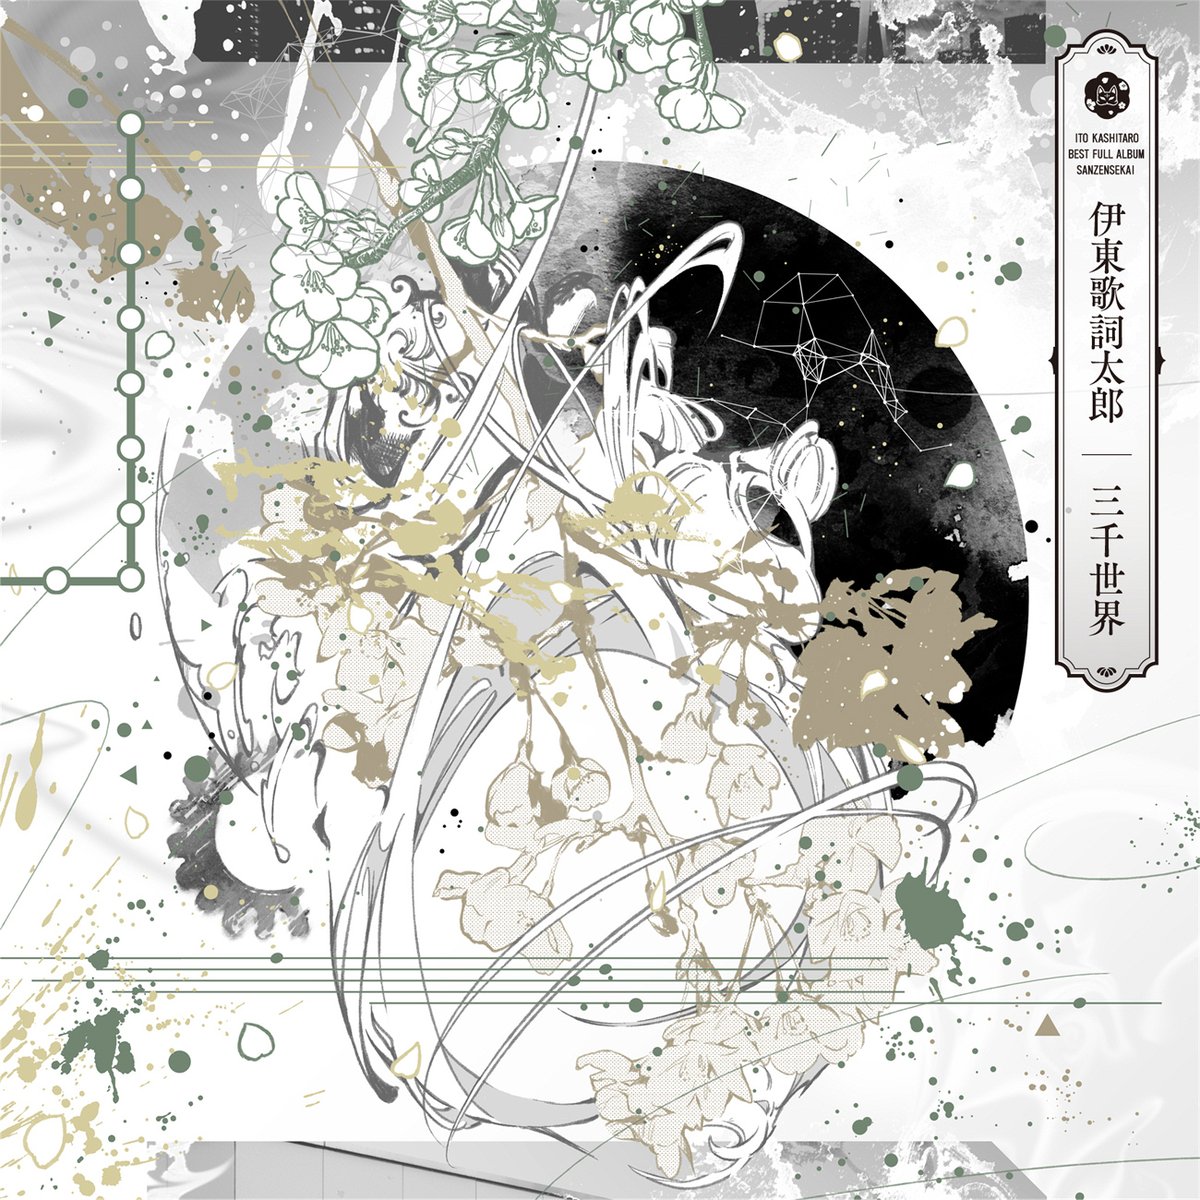 Cover for『Kashitaro Ito - Kizuna Kizu』from the release『Sanzen Sekai』